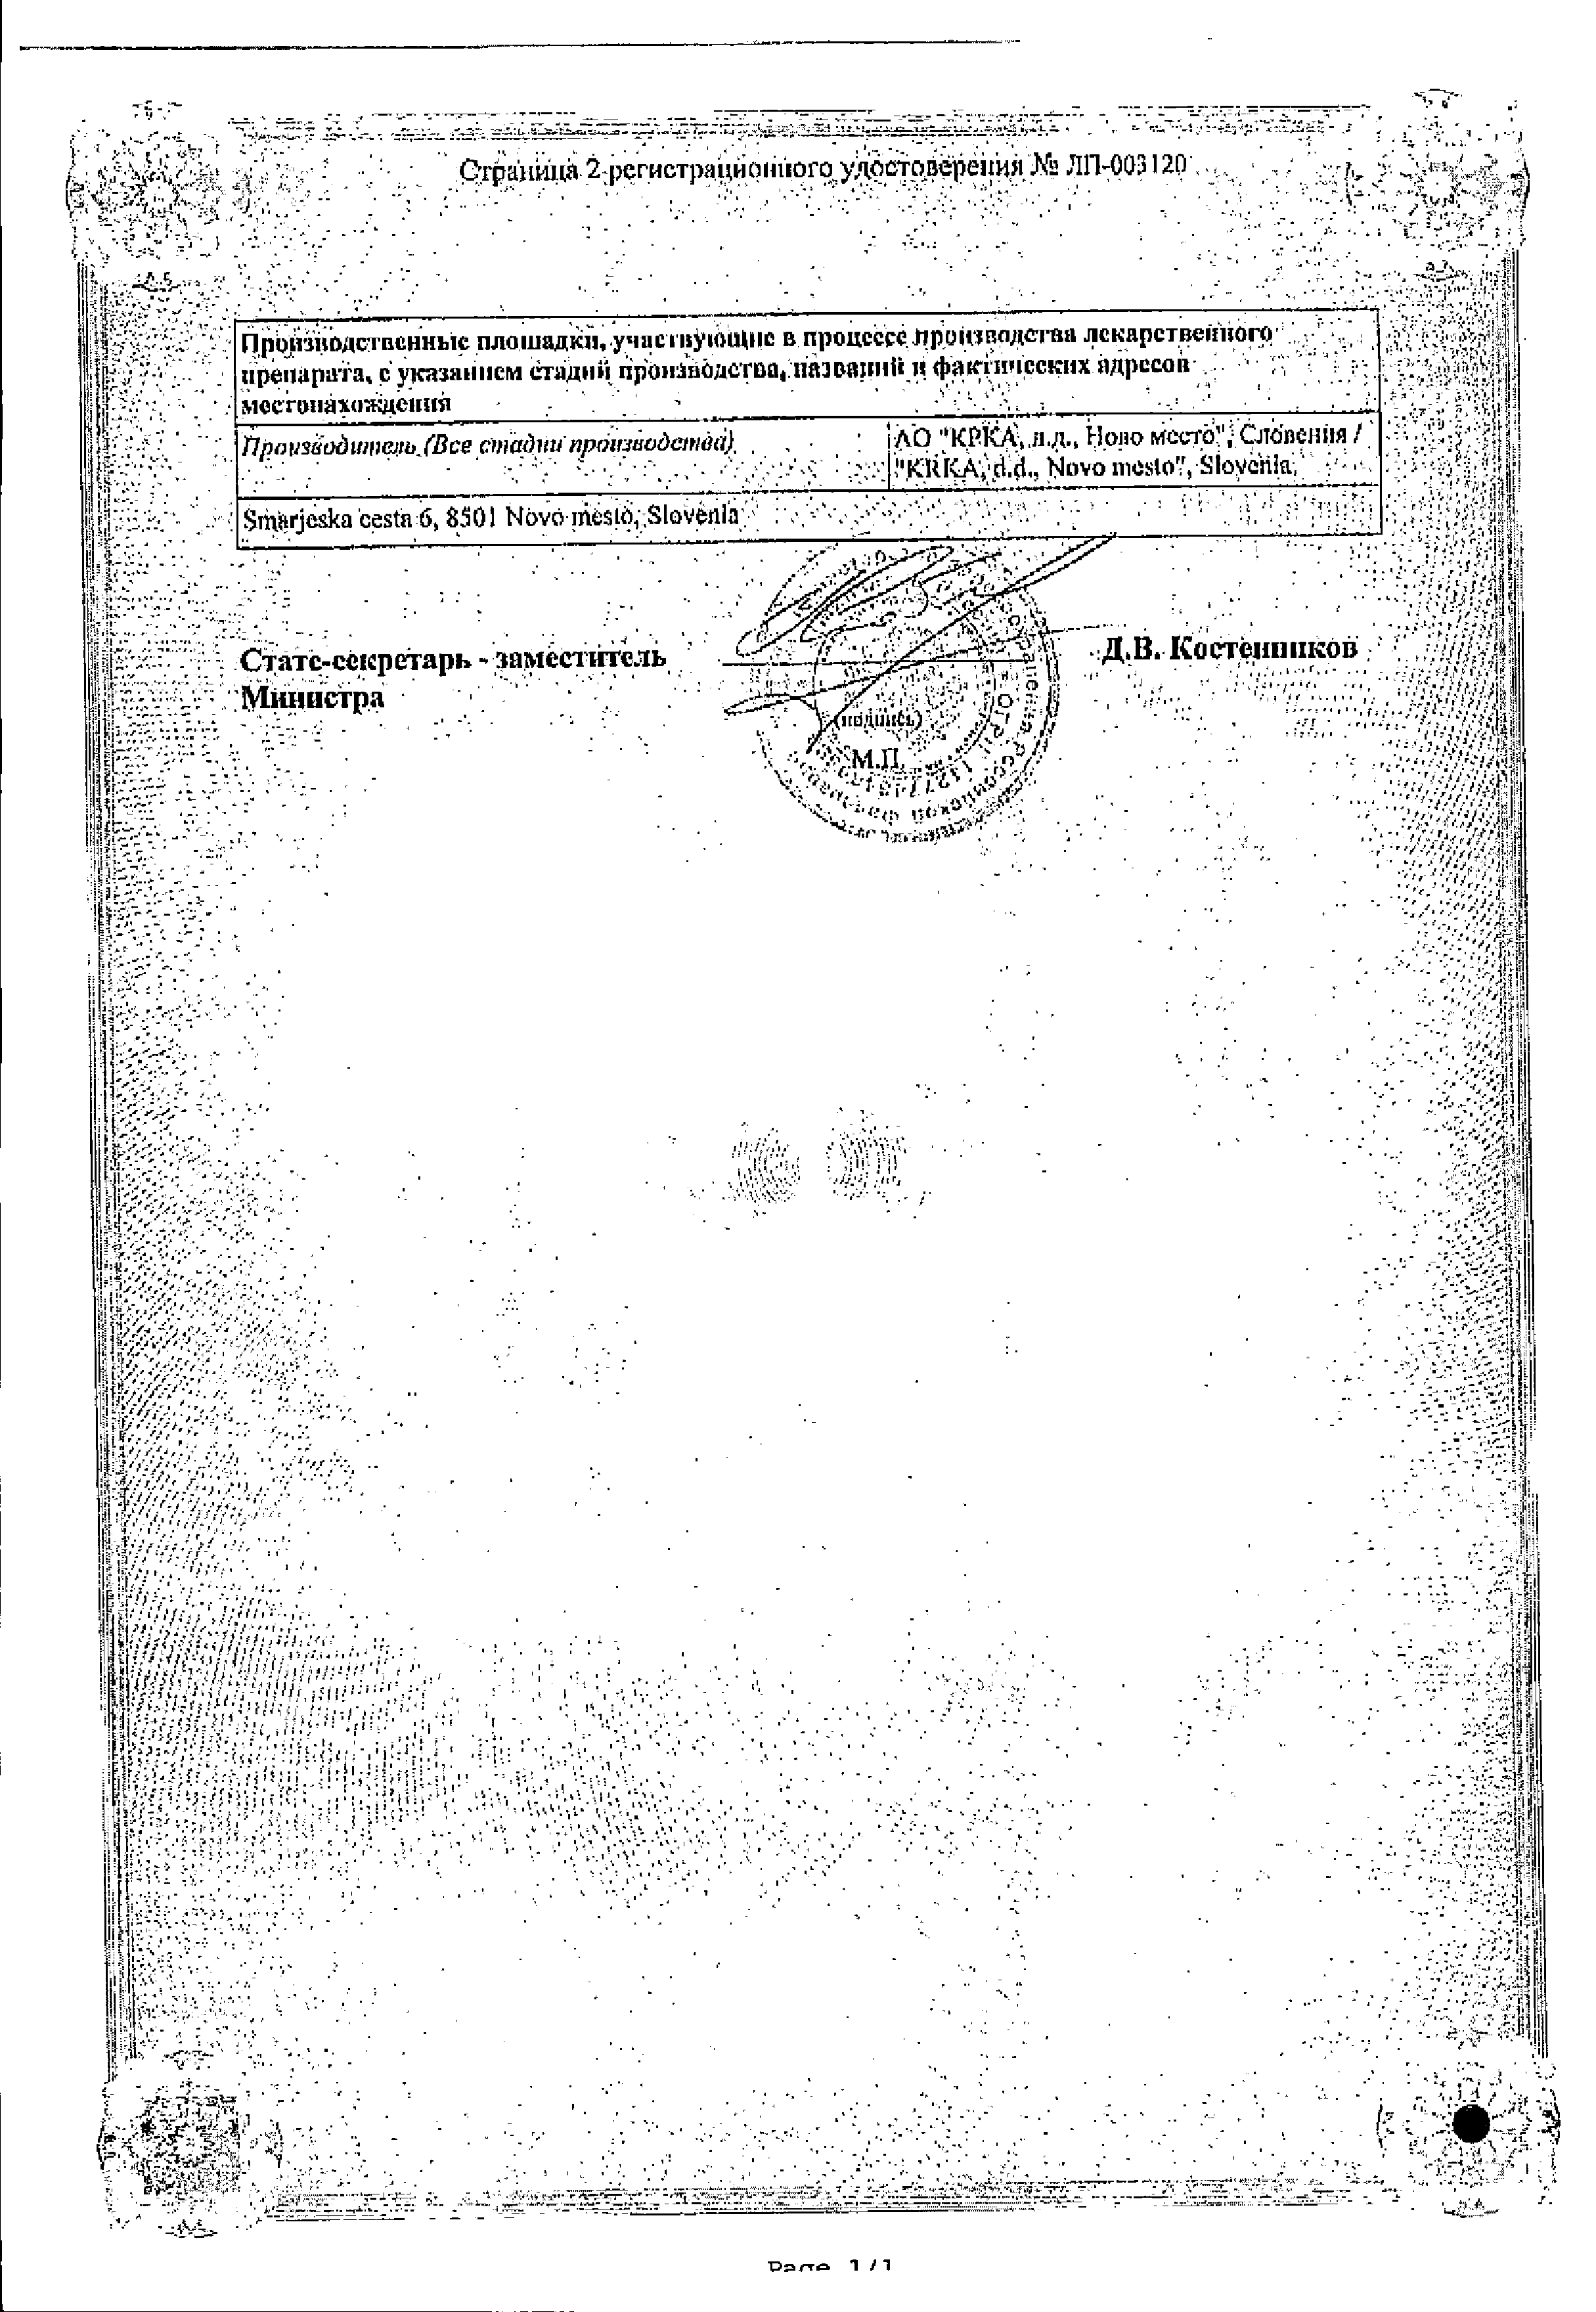 Улькавис сертификат